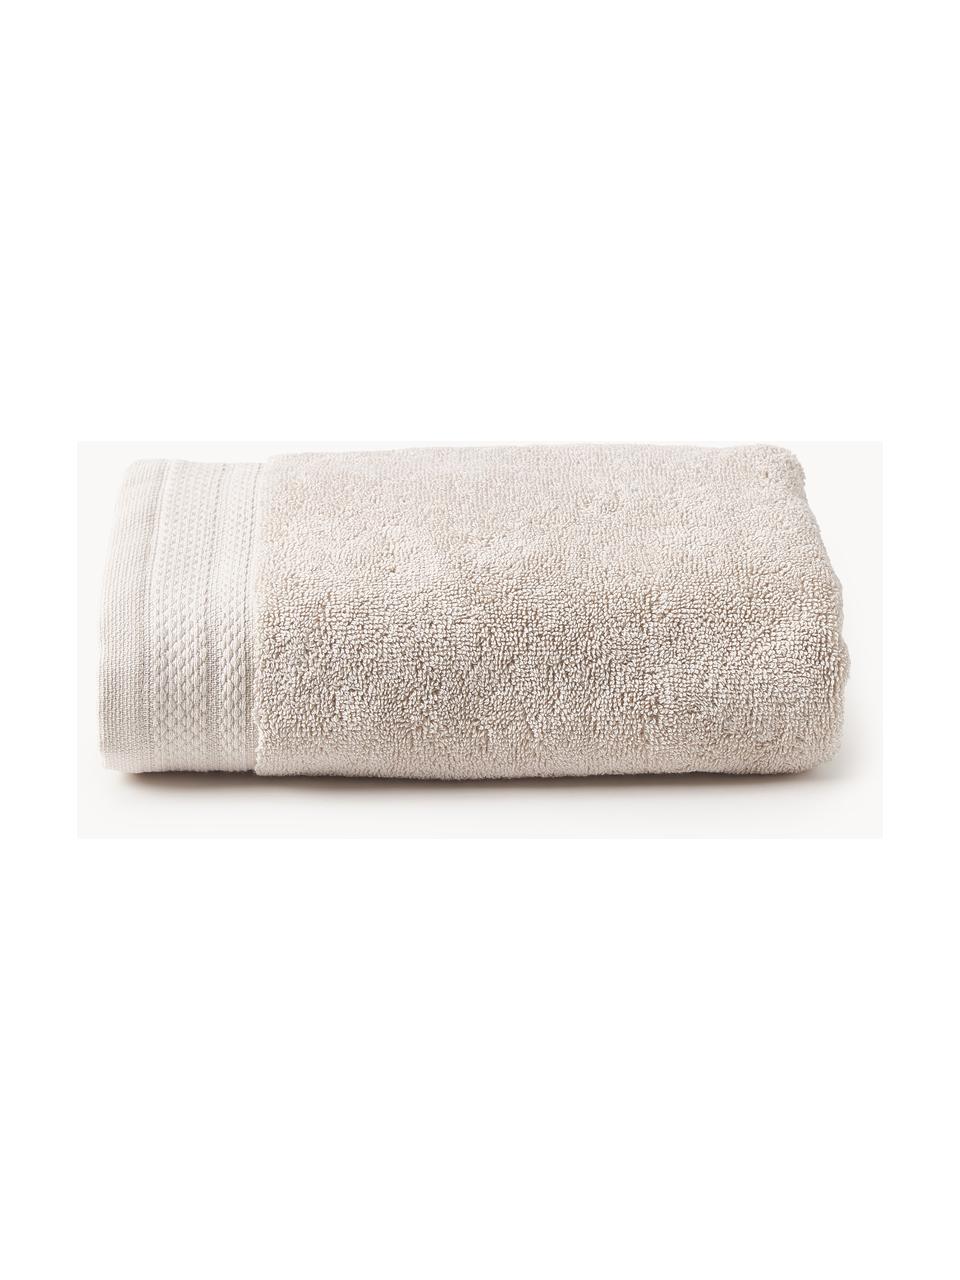 Handtuch Premium aus Bio-Baumwolle in verschiedenen Größen, 100 % Bio-Baumwolle, GOTS-zertifiziert (von GCL International, GCL-300517)
 Schwere Qualität, 600 g/m², Hellbeige, Handtuch, B 50 x L 100 cm